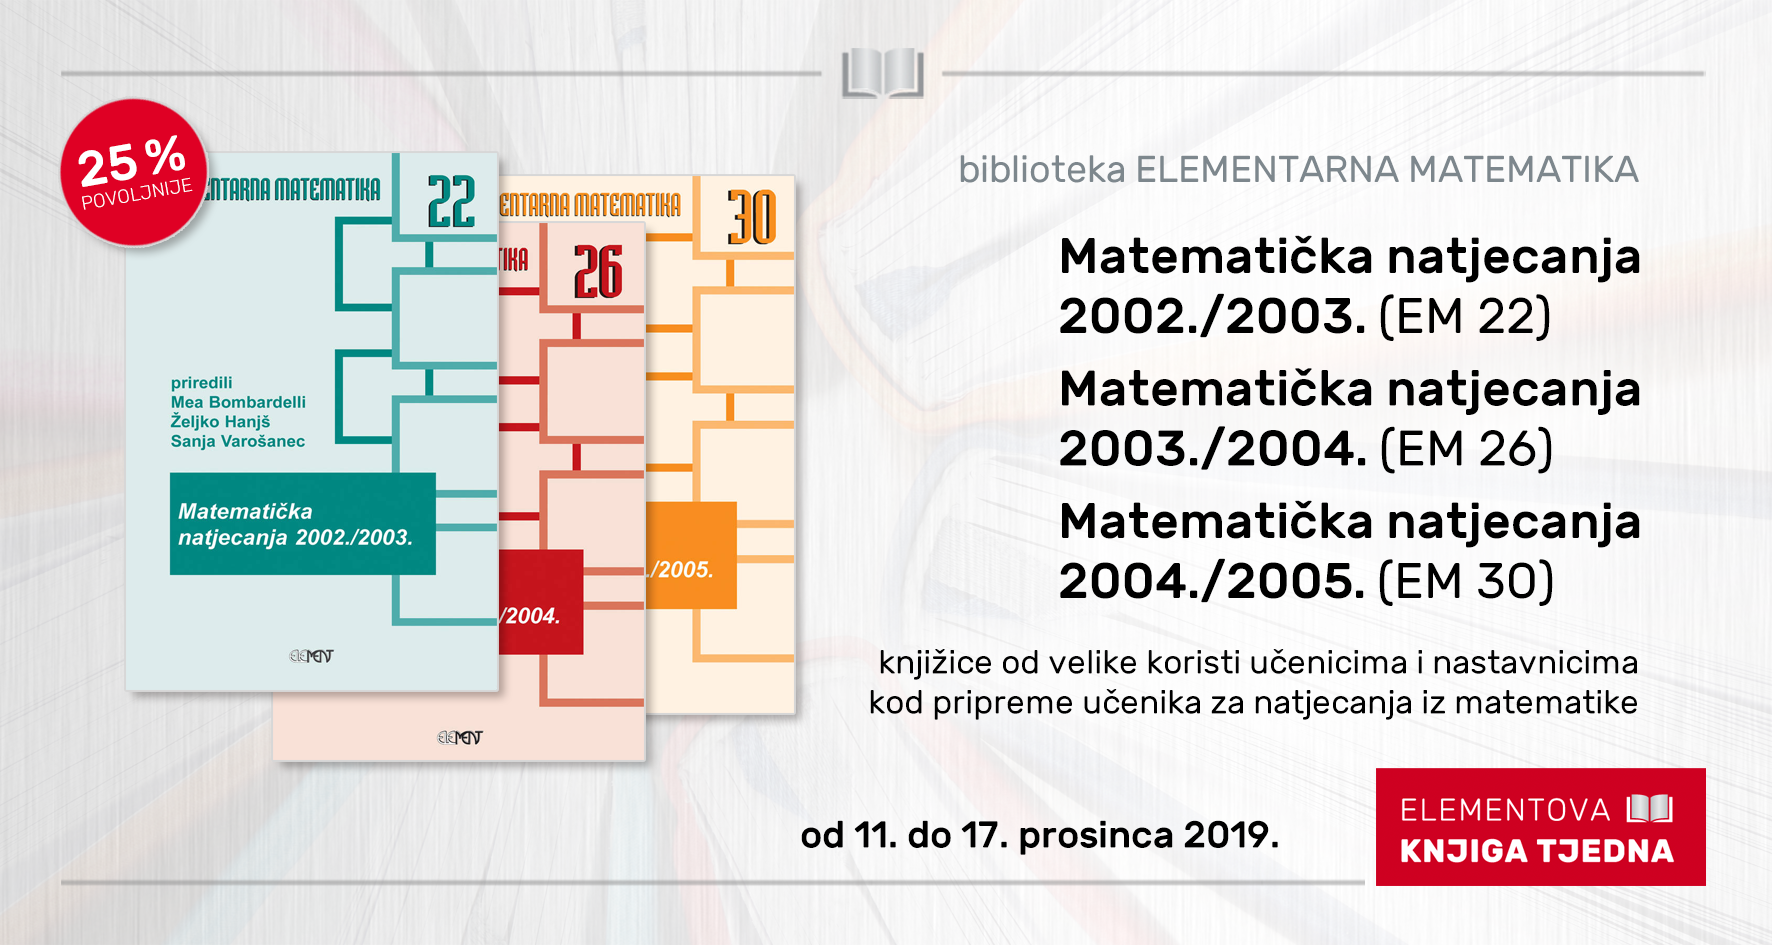 Matematička natjecanja 2003./2004. (EM 26)